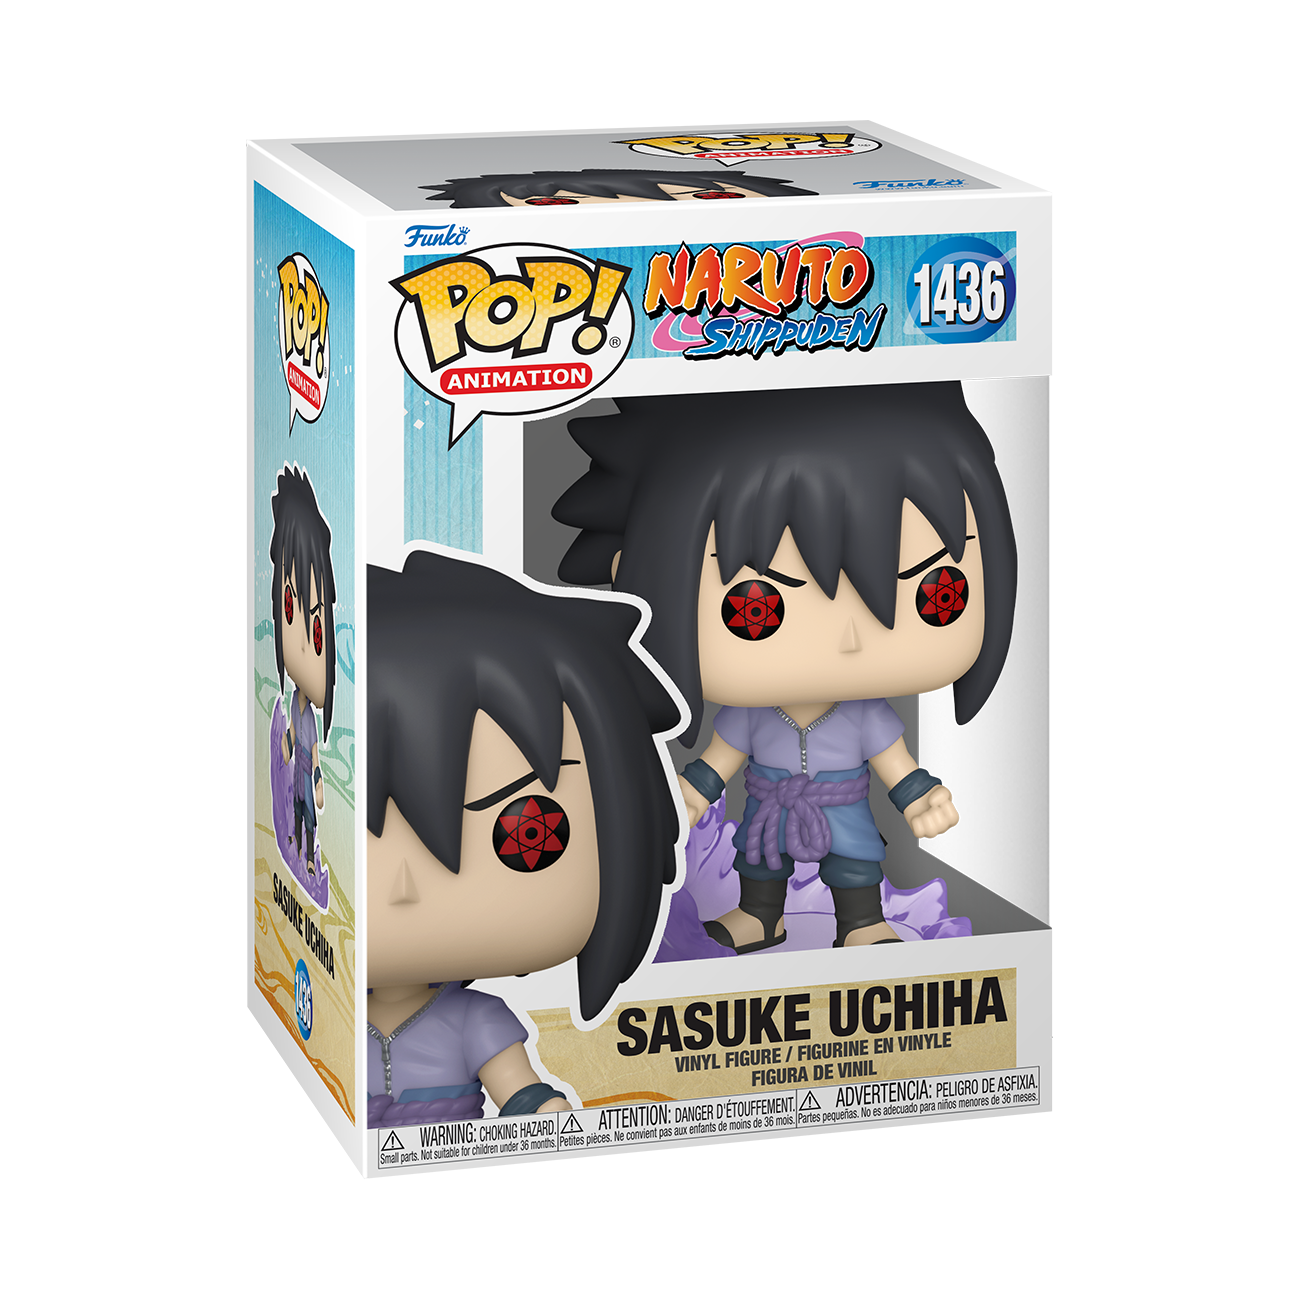 Naruto Shippuden - Figurine Pop Up Parade Sasuke Uchiha 17 cm